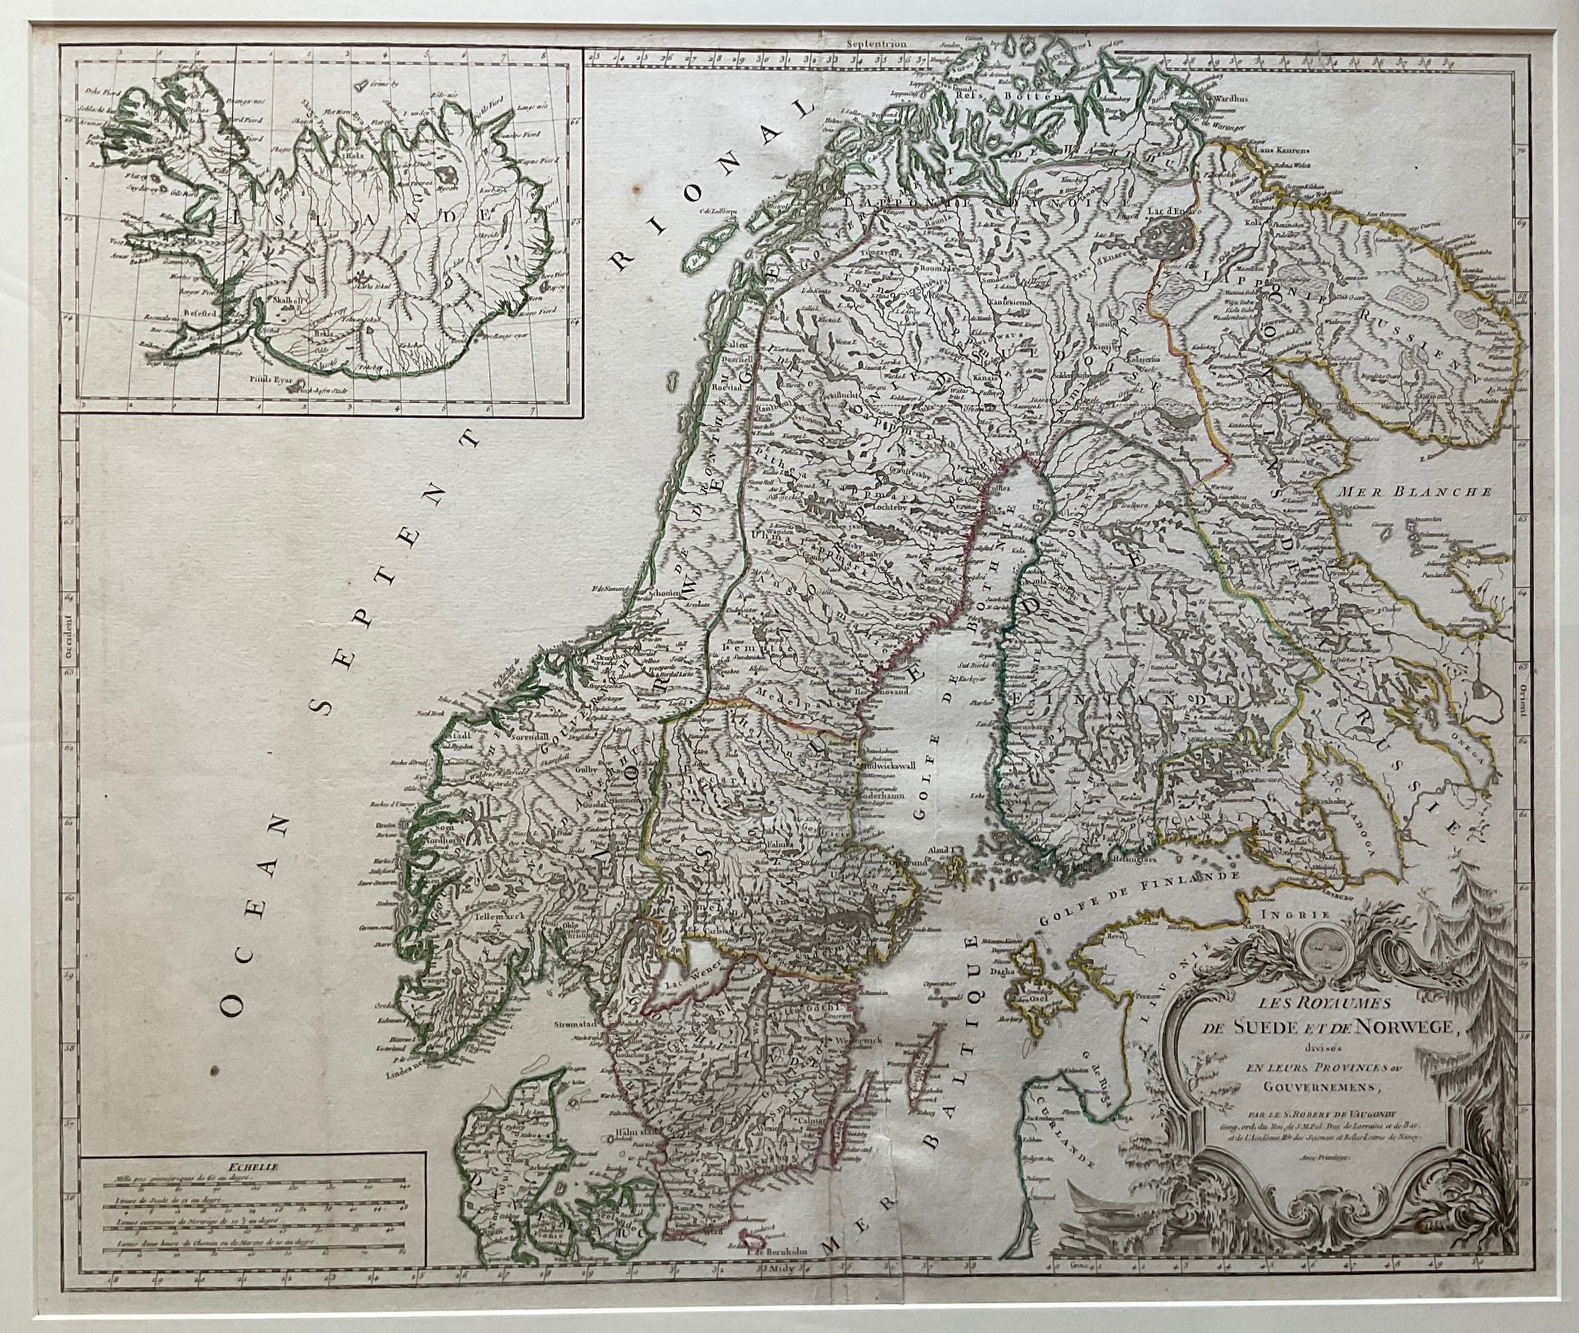 Les Royaumes de Suede et de Norwege, divises en leurs Provinces ou Gouvernemens